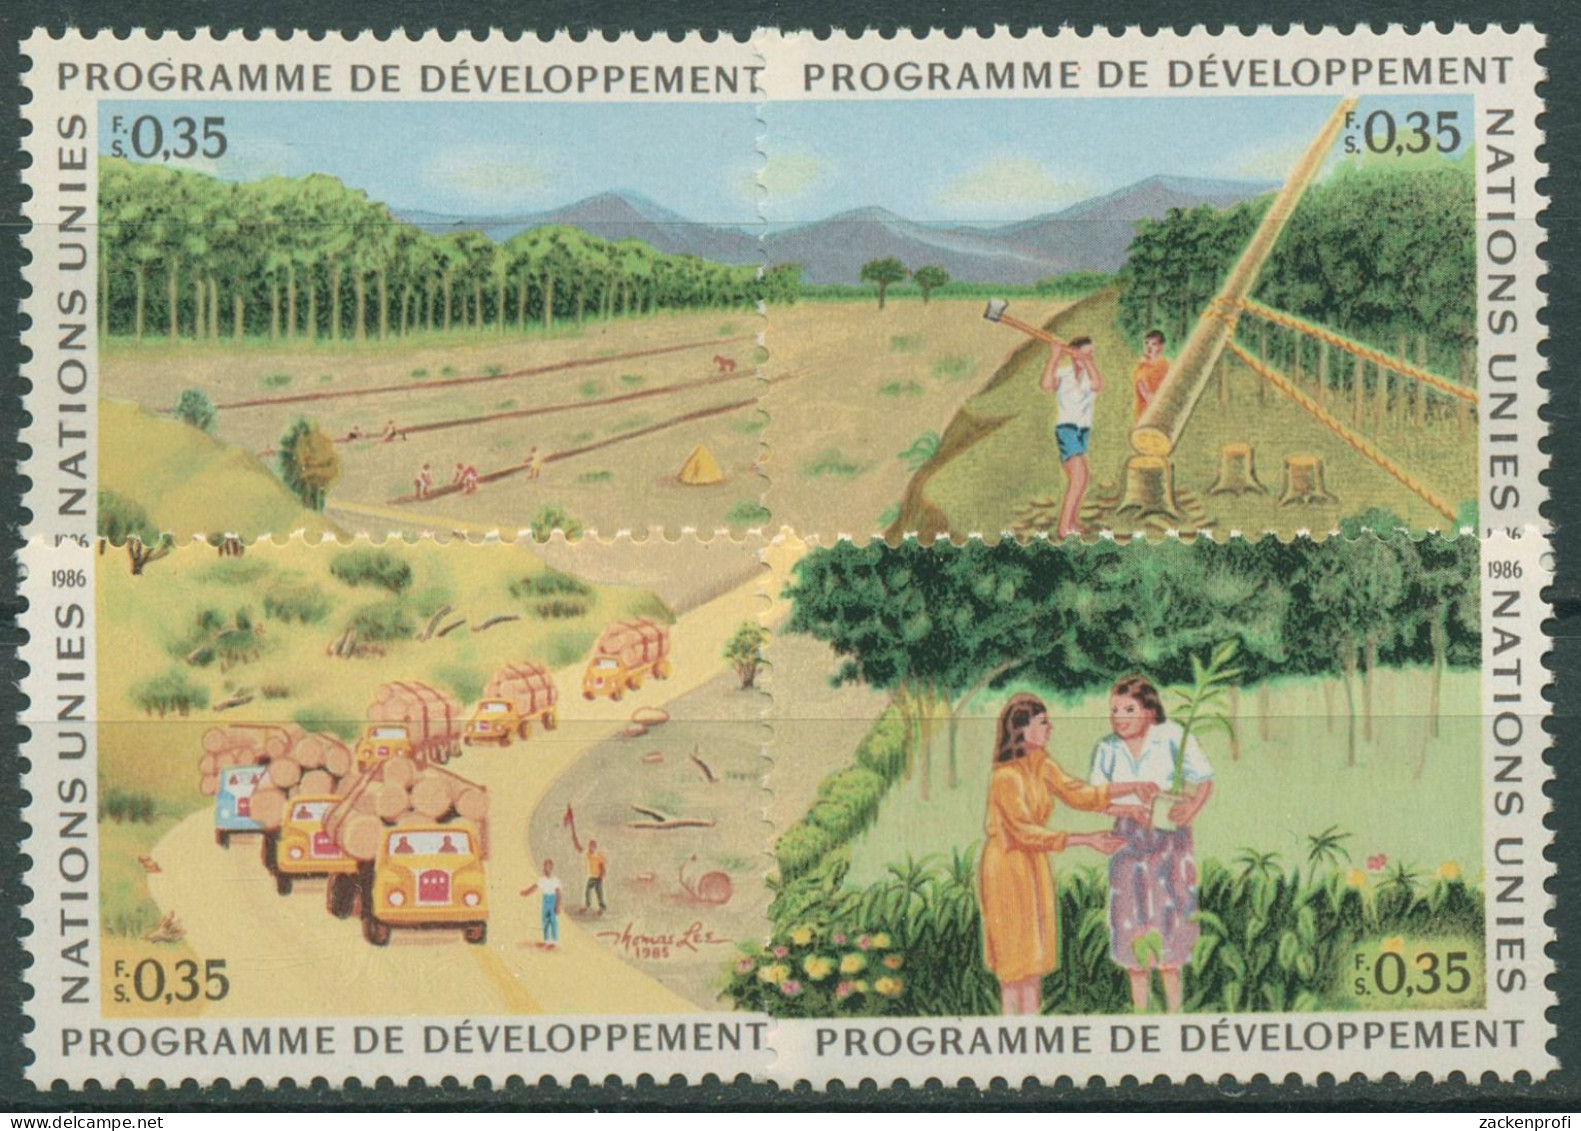 UNO Genf 1986 Entwicklungsprogramm Wald Aufforstung 138/41 Postfrisch - Ungebraucht